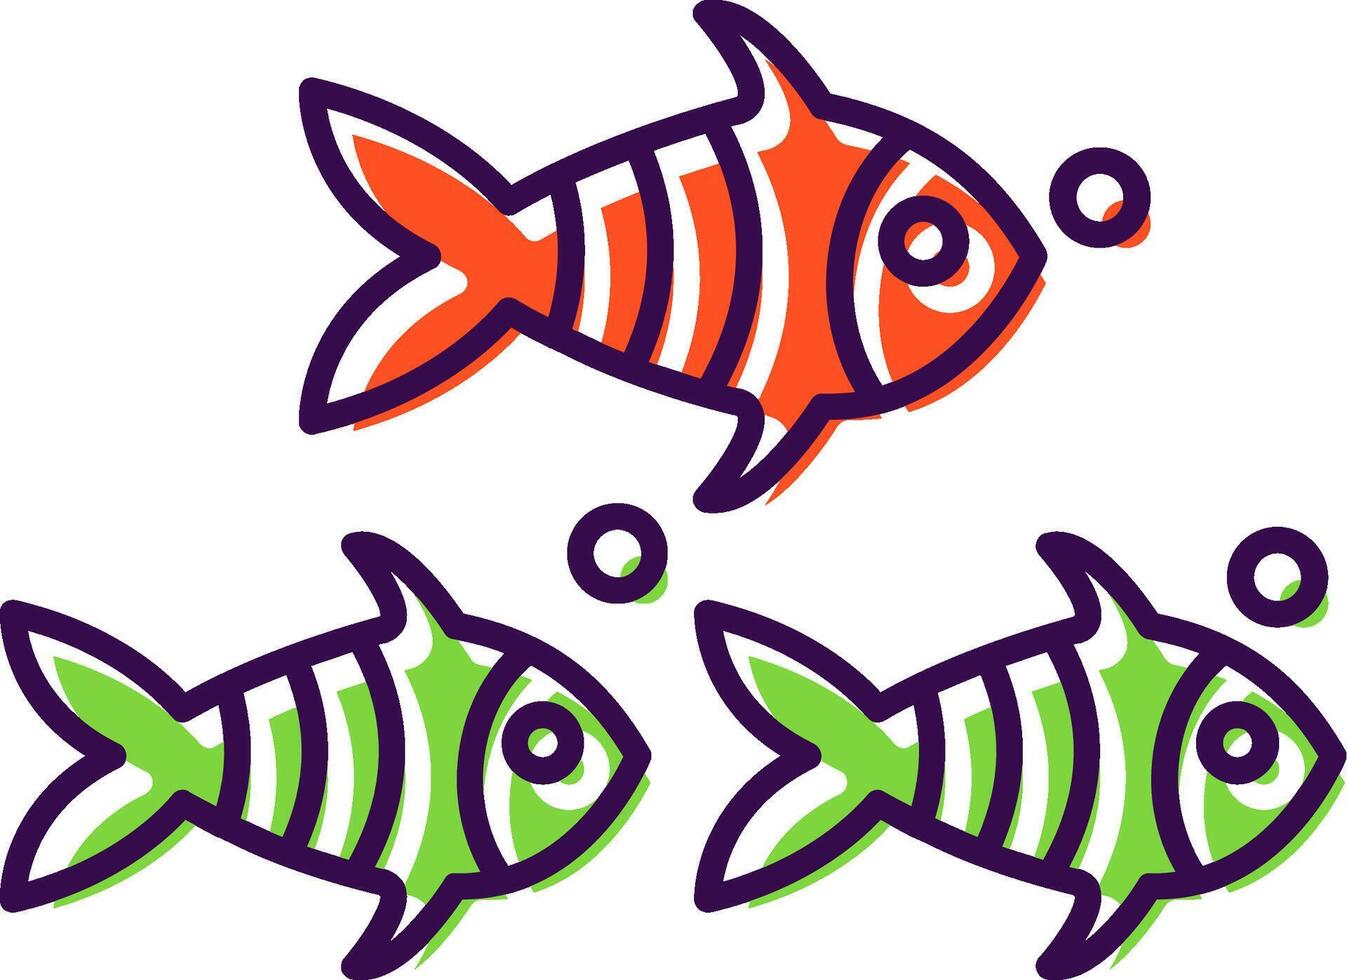 Fisch gefüllt Symbol vektor